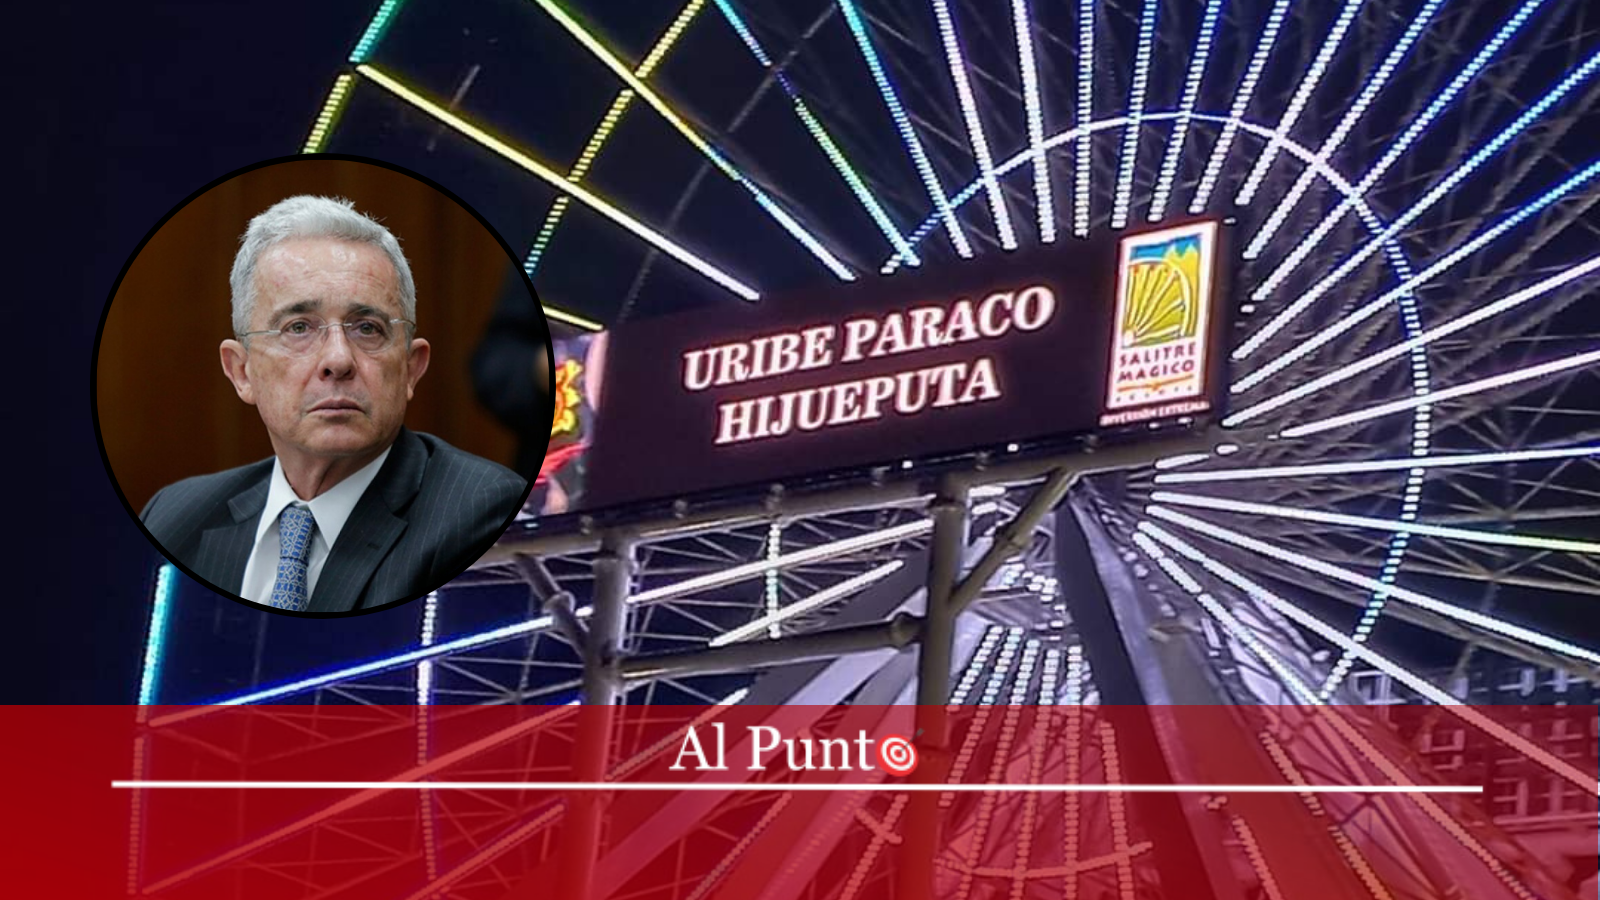 Uribe paraco hijue…»: Mensaje en rueda de Salitre Mágico. • Al Punto